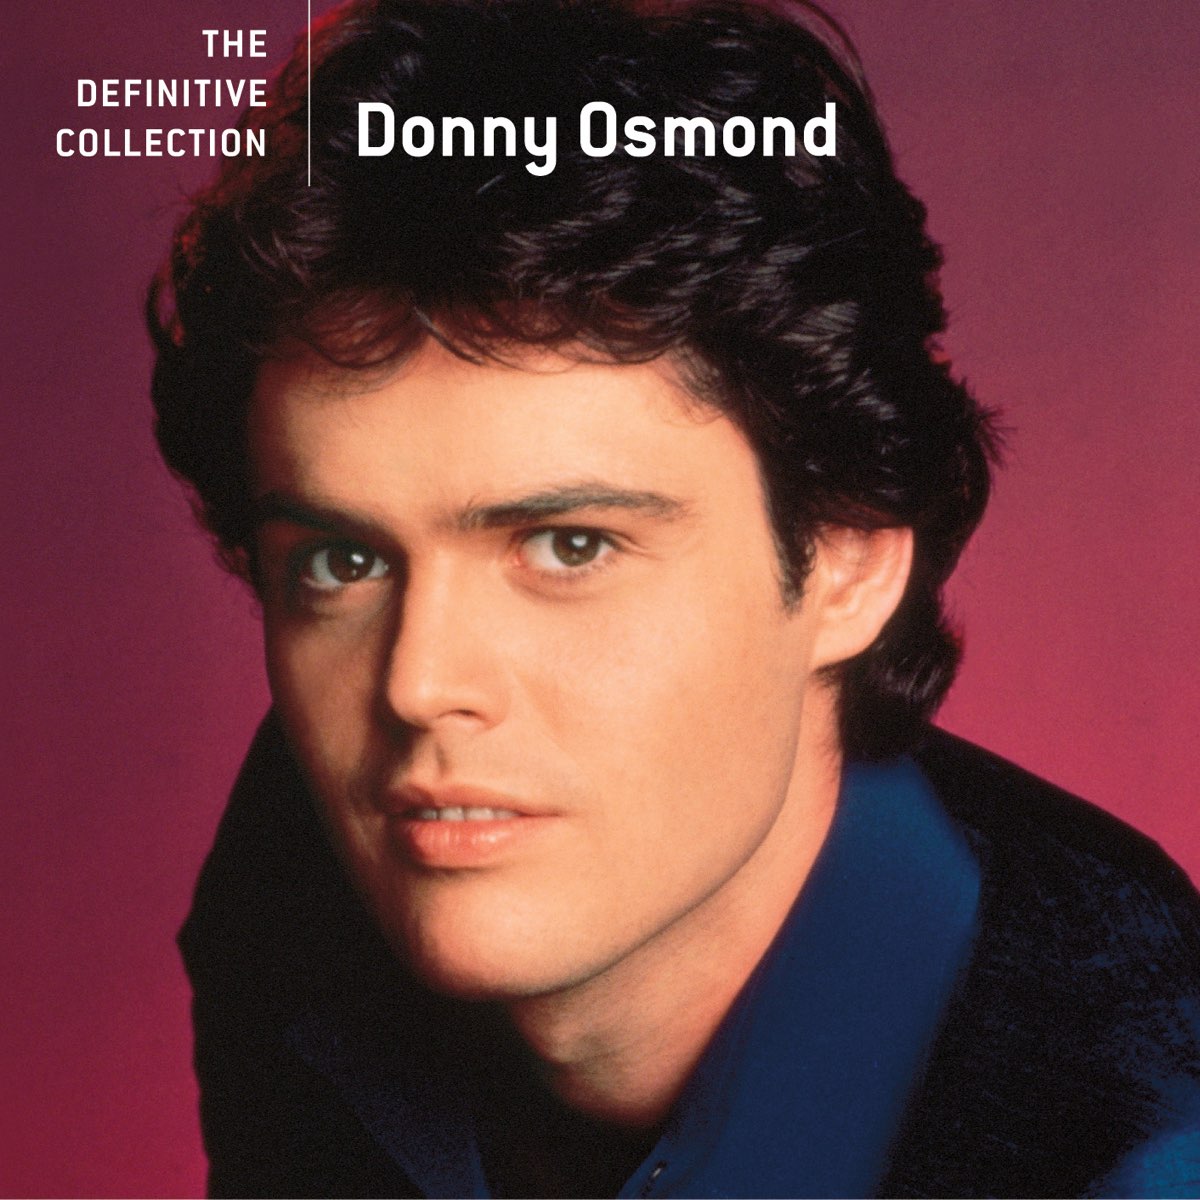 ‎ダニー・オズモンドの「Donny Osmond: The Definitive Collection」をApple Musicで